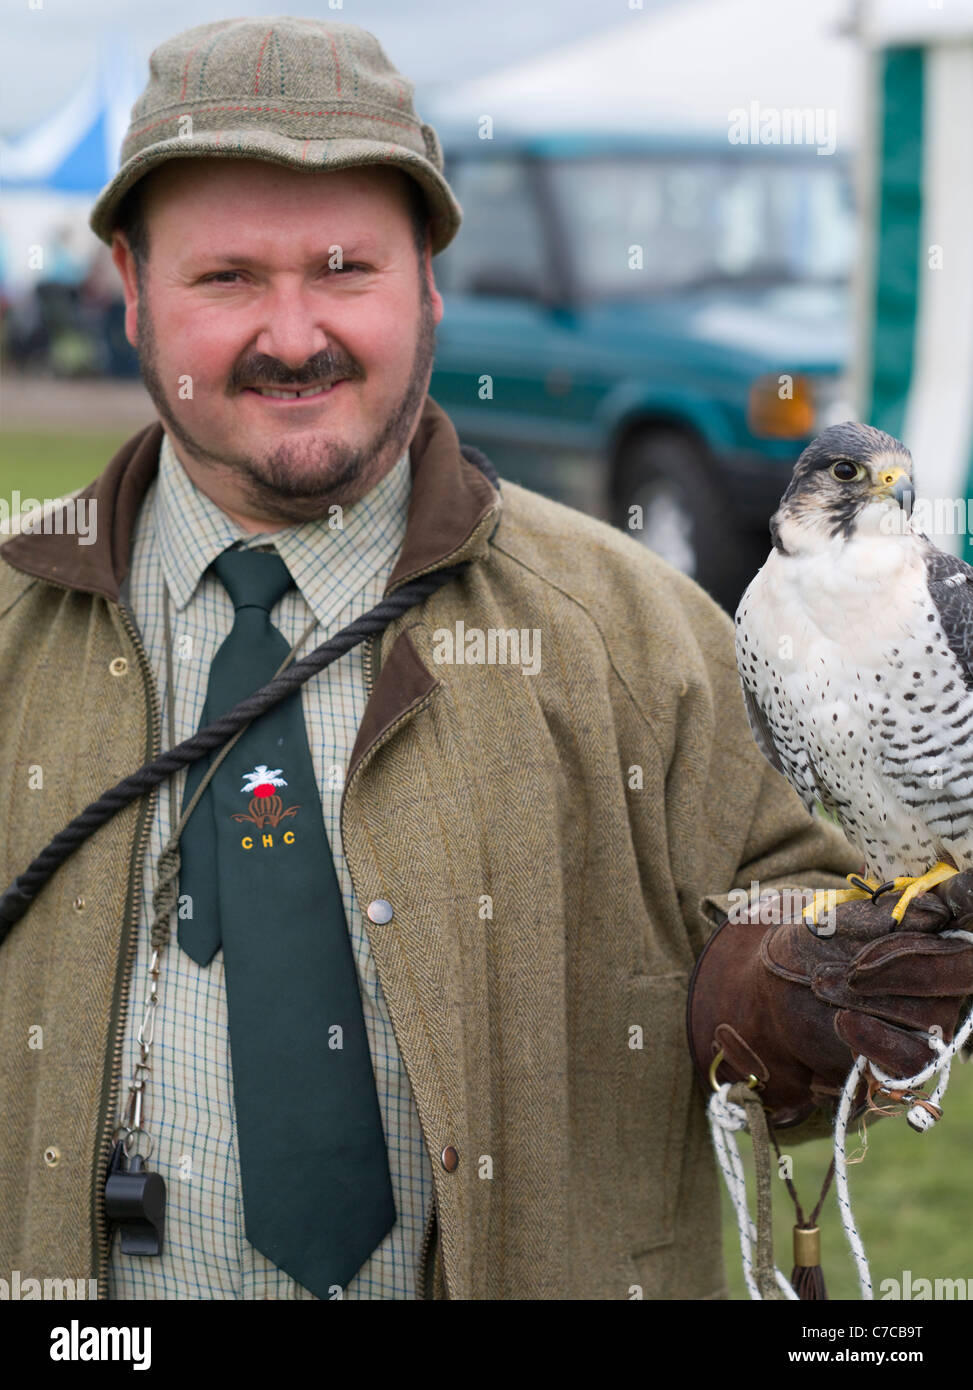 Jeu de Cheshire & Country Fair - La fauconnerie Falconer : RICHARD NEWTON Bird : White Gyr Falcon x hybride Faucon pèlerin Banque D'Images